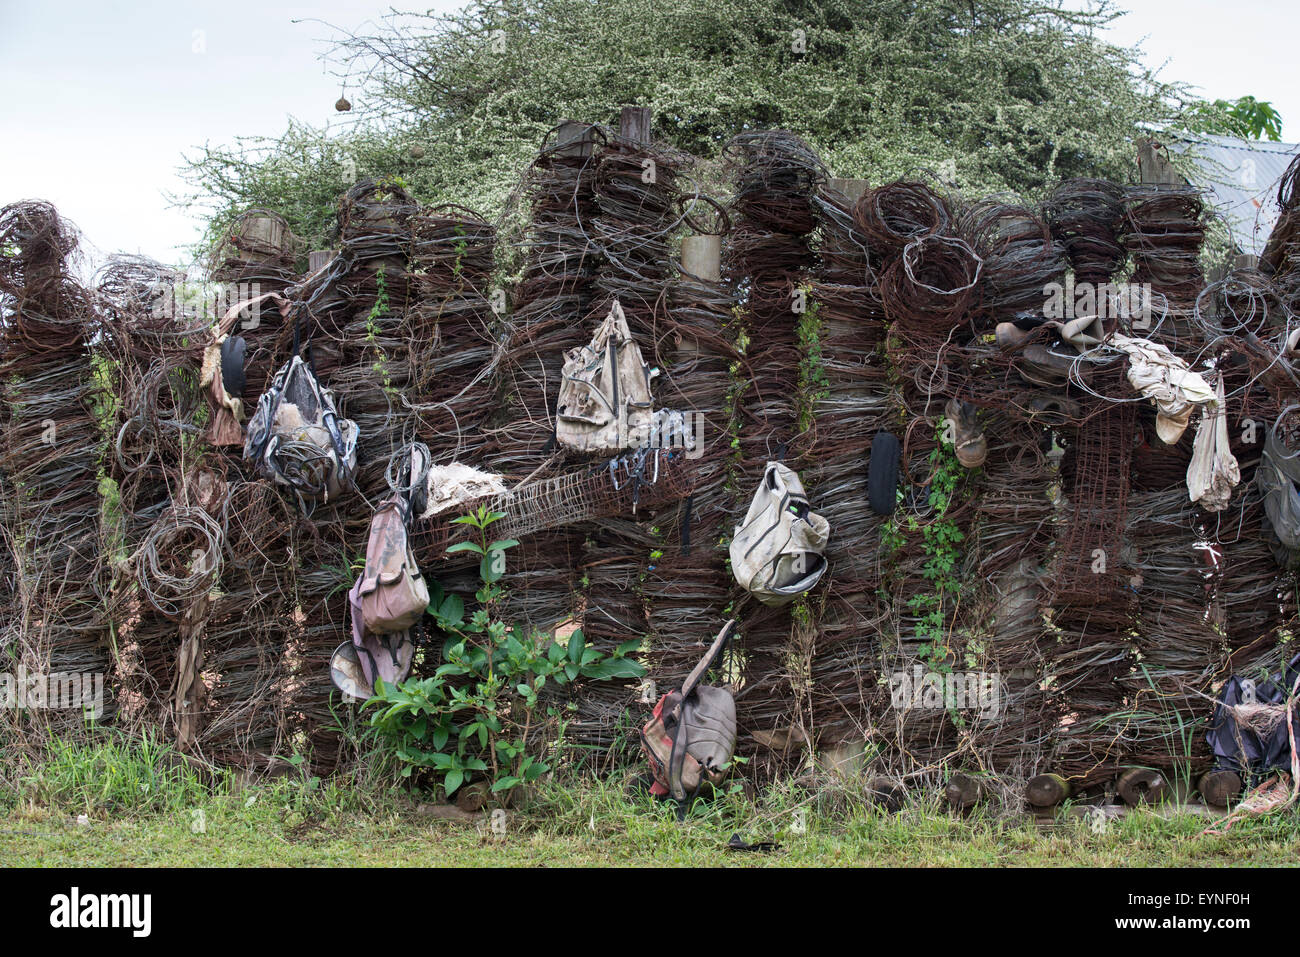 Pantalla de alambre insidias y mochilas recogidos de los cazadores furtivos en el Parque Nacional Hlane, Suazilandia Foto de stock